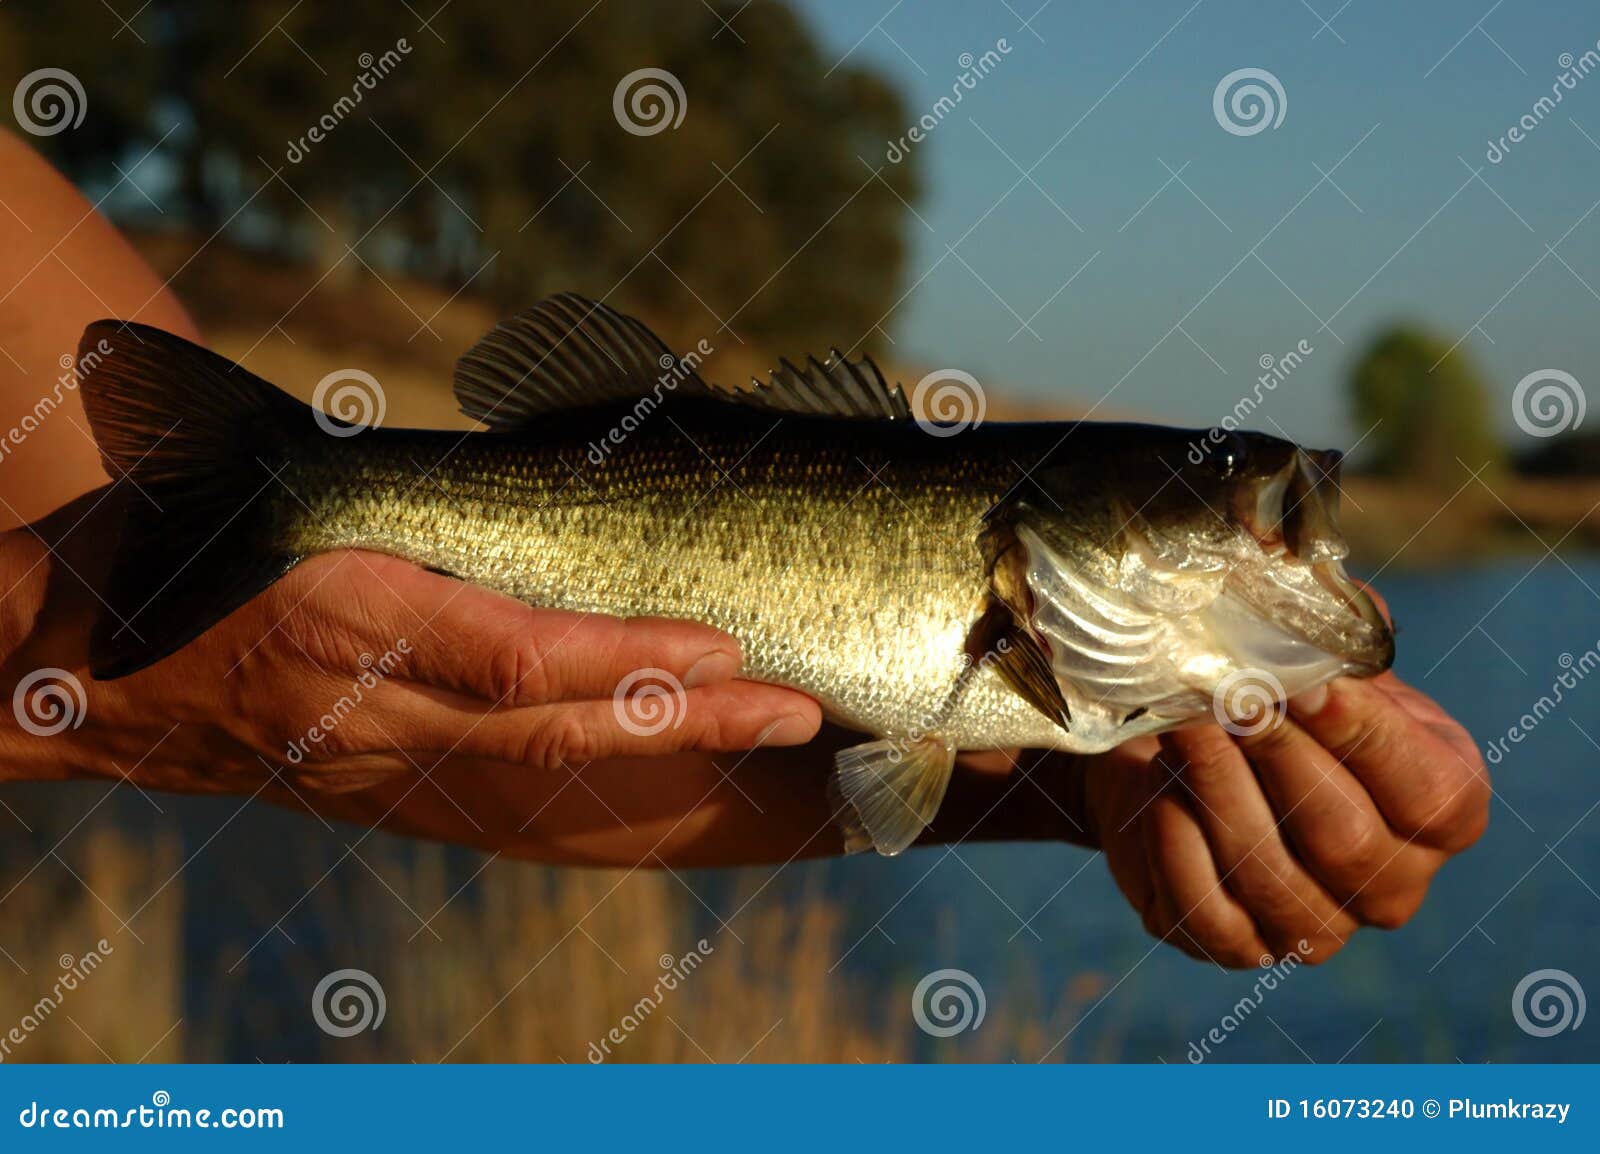 angler with bass fish